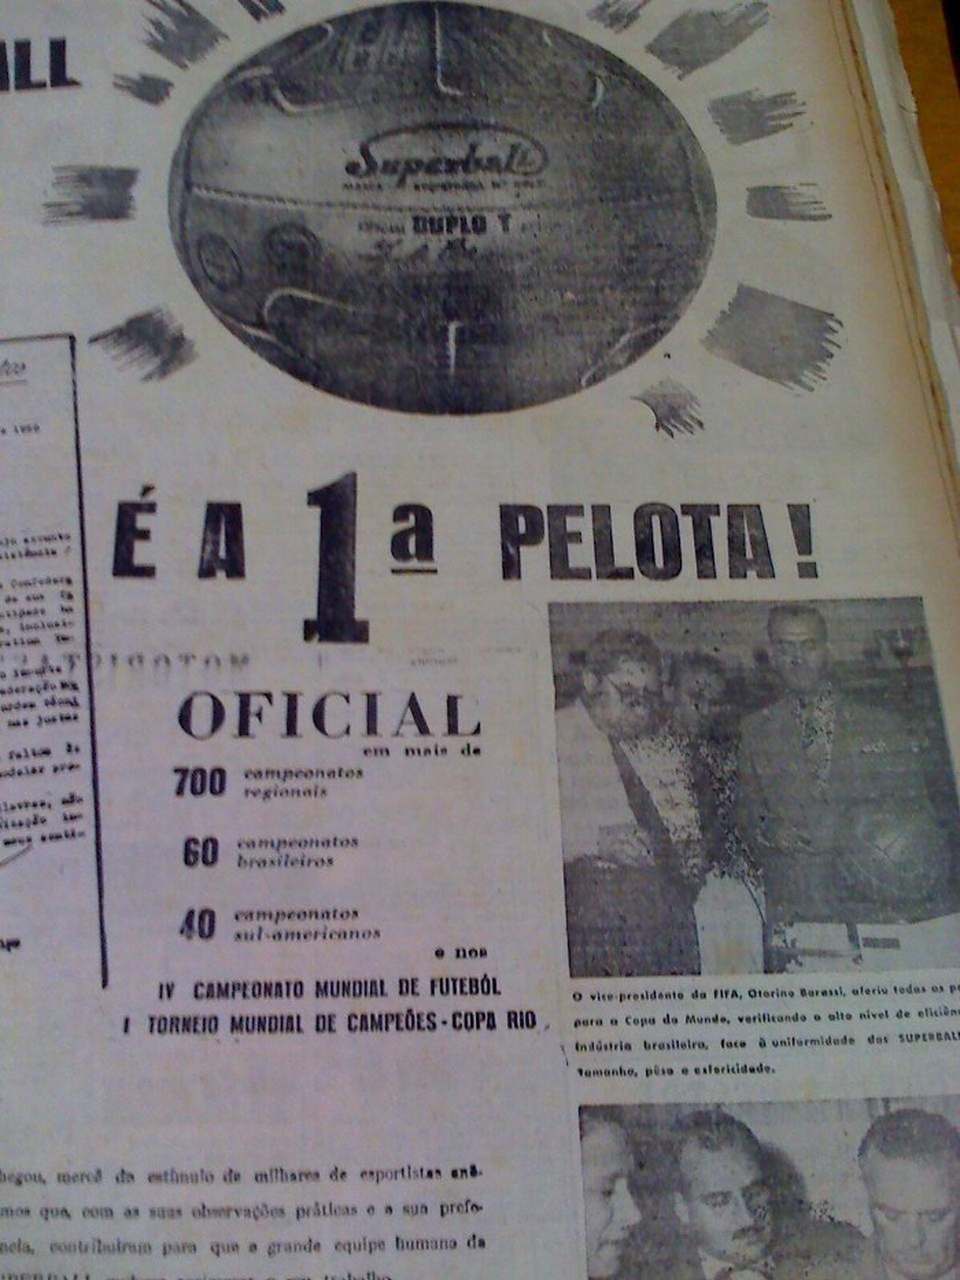 Folha de Naviraí - Há 65 anos, Palmeiras vencia o 1º Mundial de clubes no  Maracanã